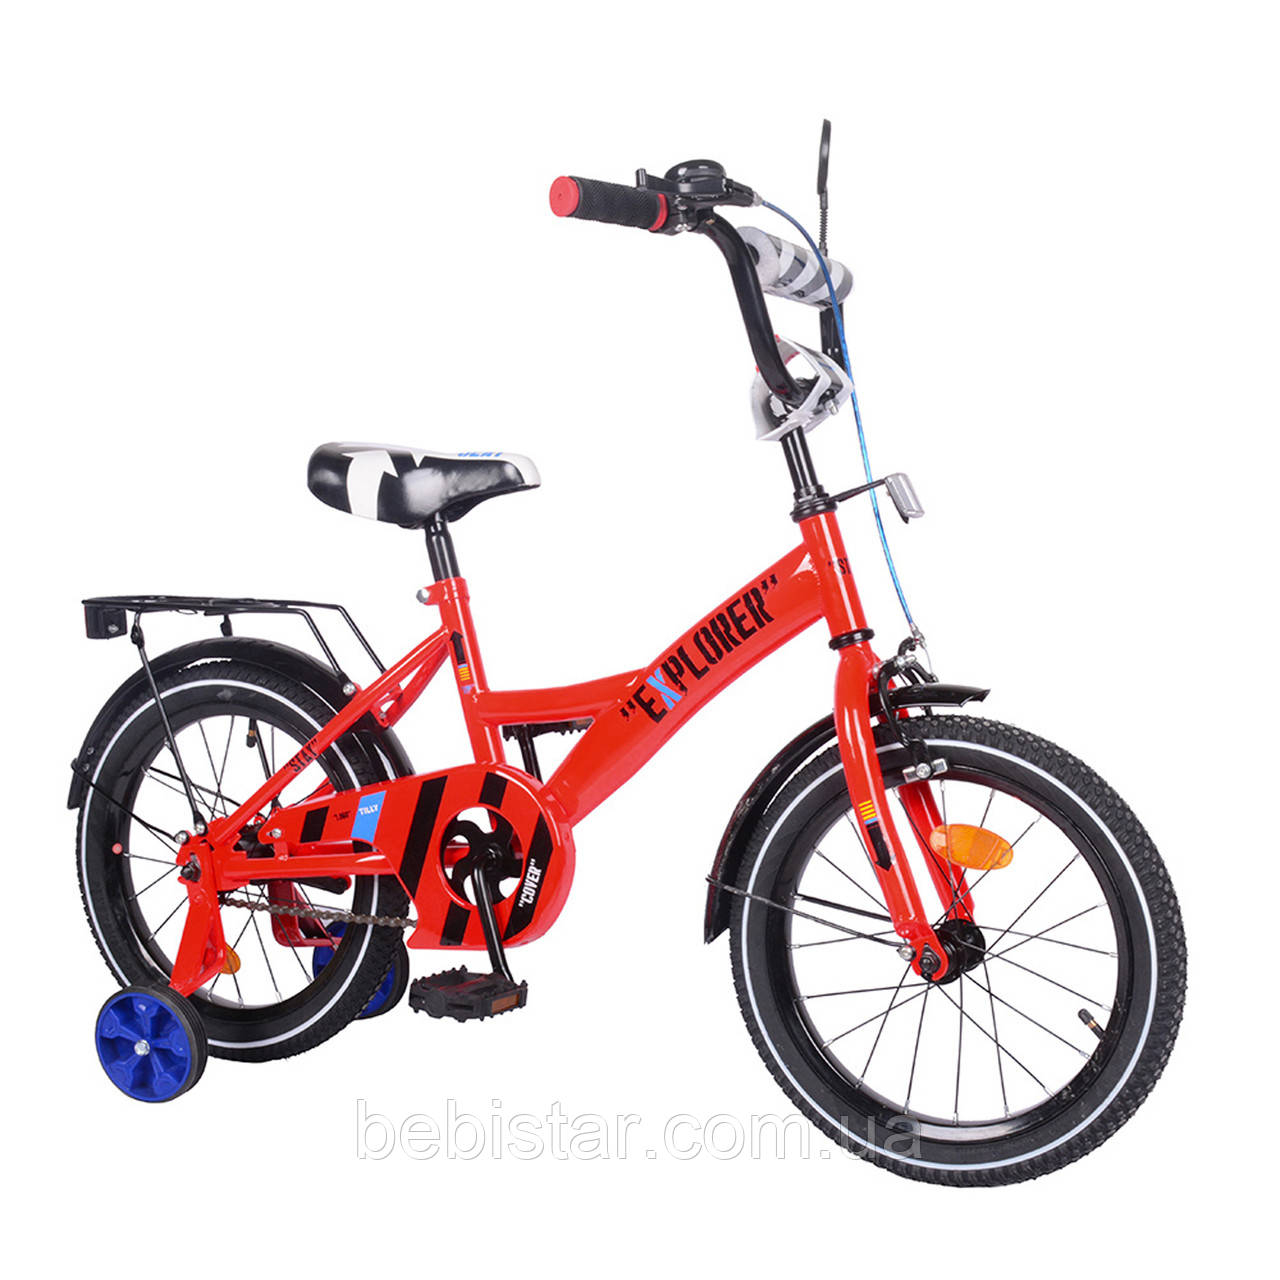 Детский двухколесный велосипед красный TILLY EXPLORER  16" звоночек, передний тороз для деток 4-6 лет